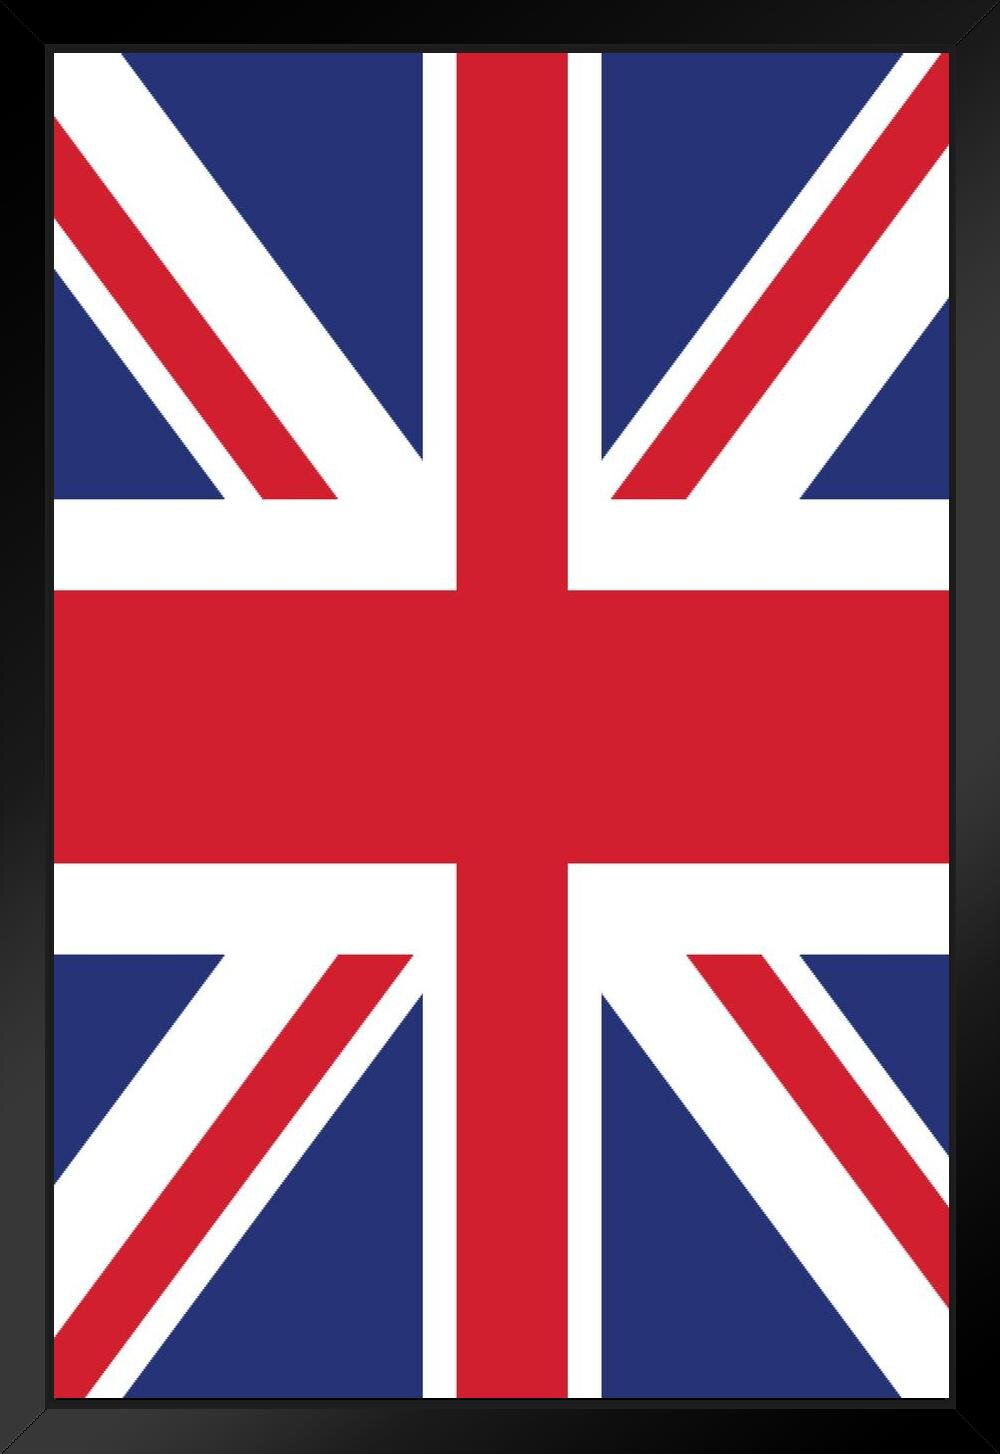 Union Jack United Kingdom Flag Illustration par